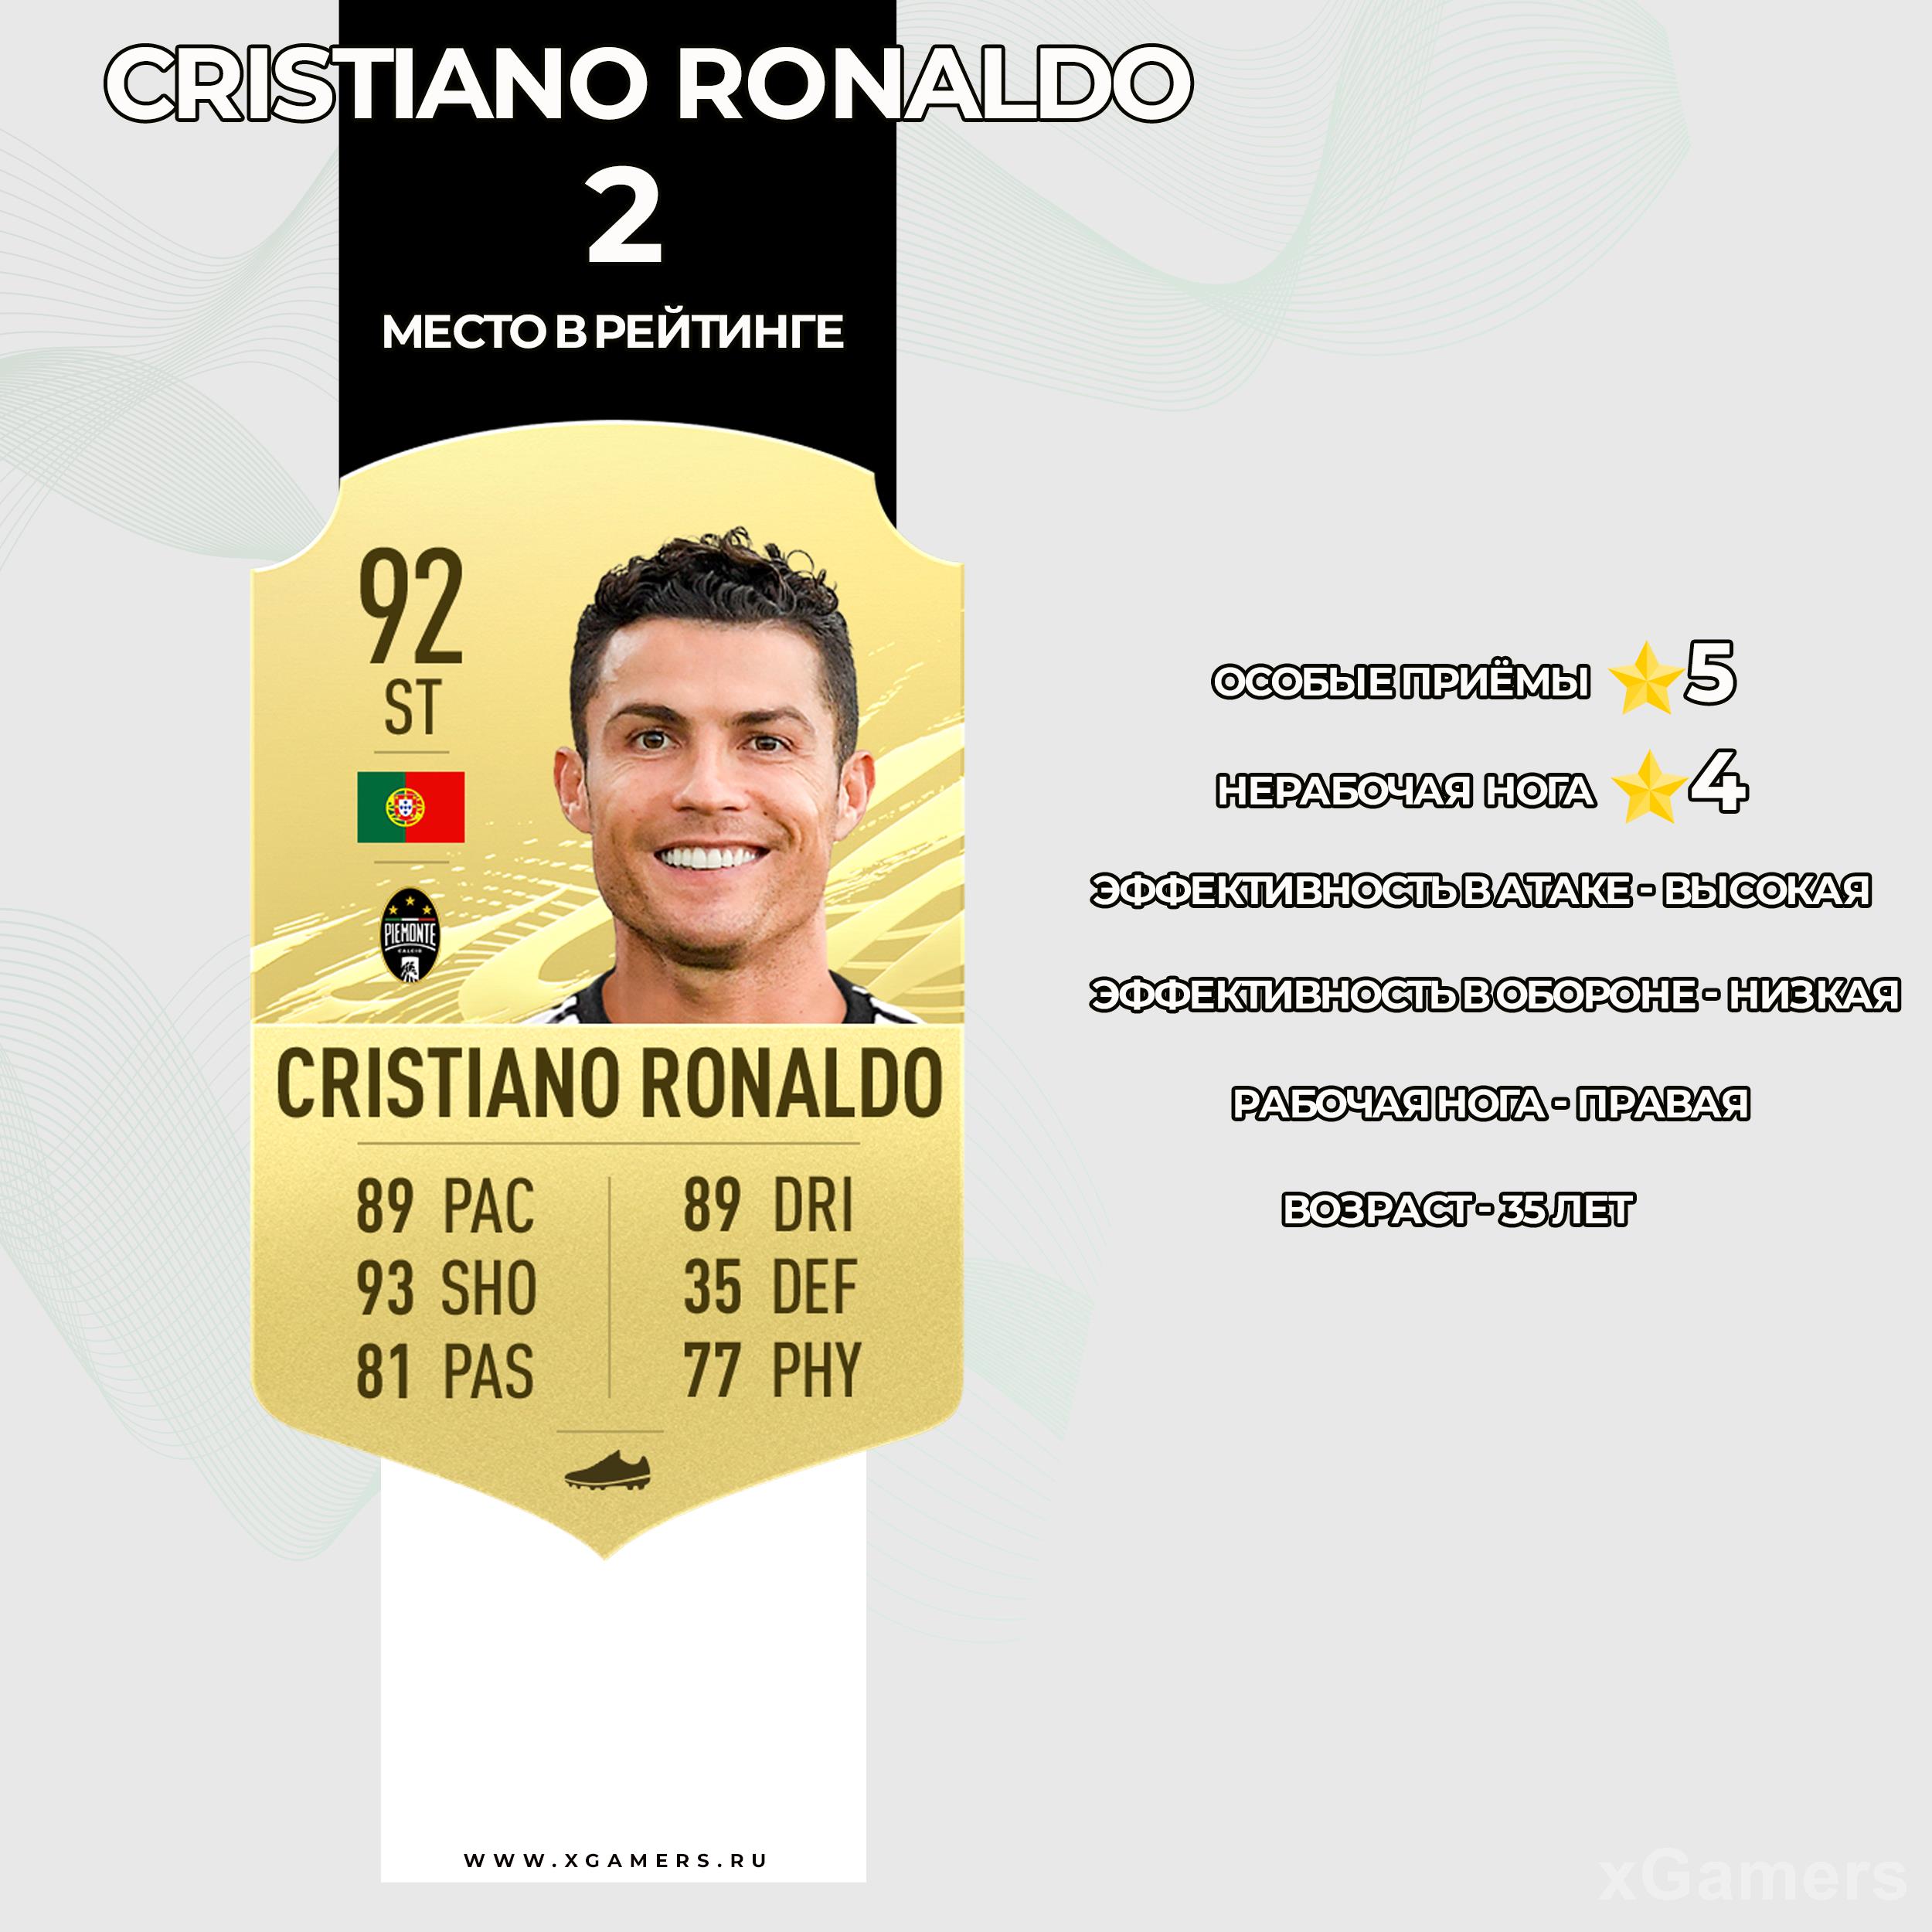 Карточка игрока Ювентуса (Пьемонто Кальчо) в FIFA 21 - Криштиано Роналду